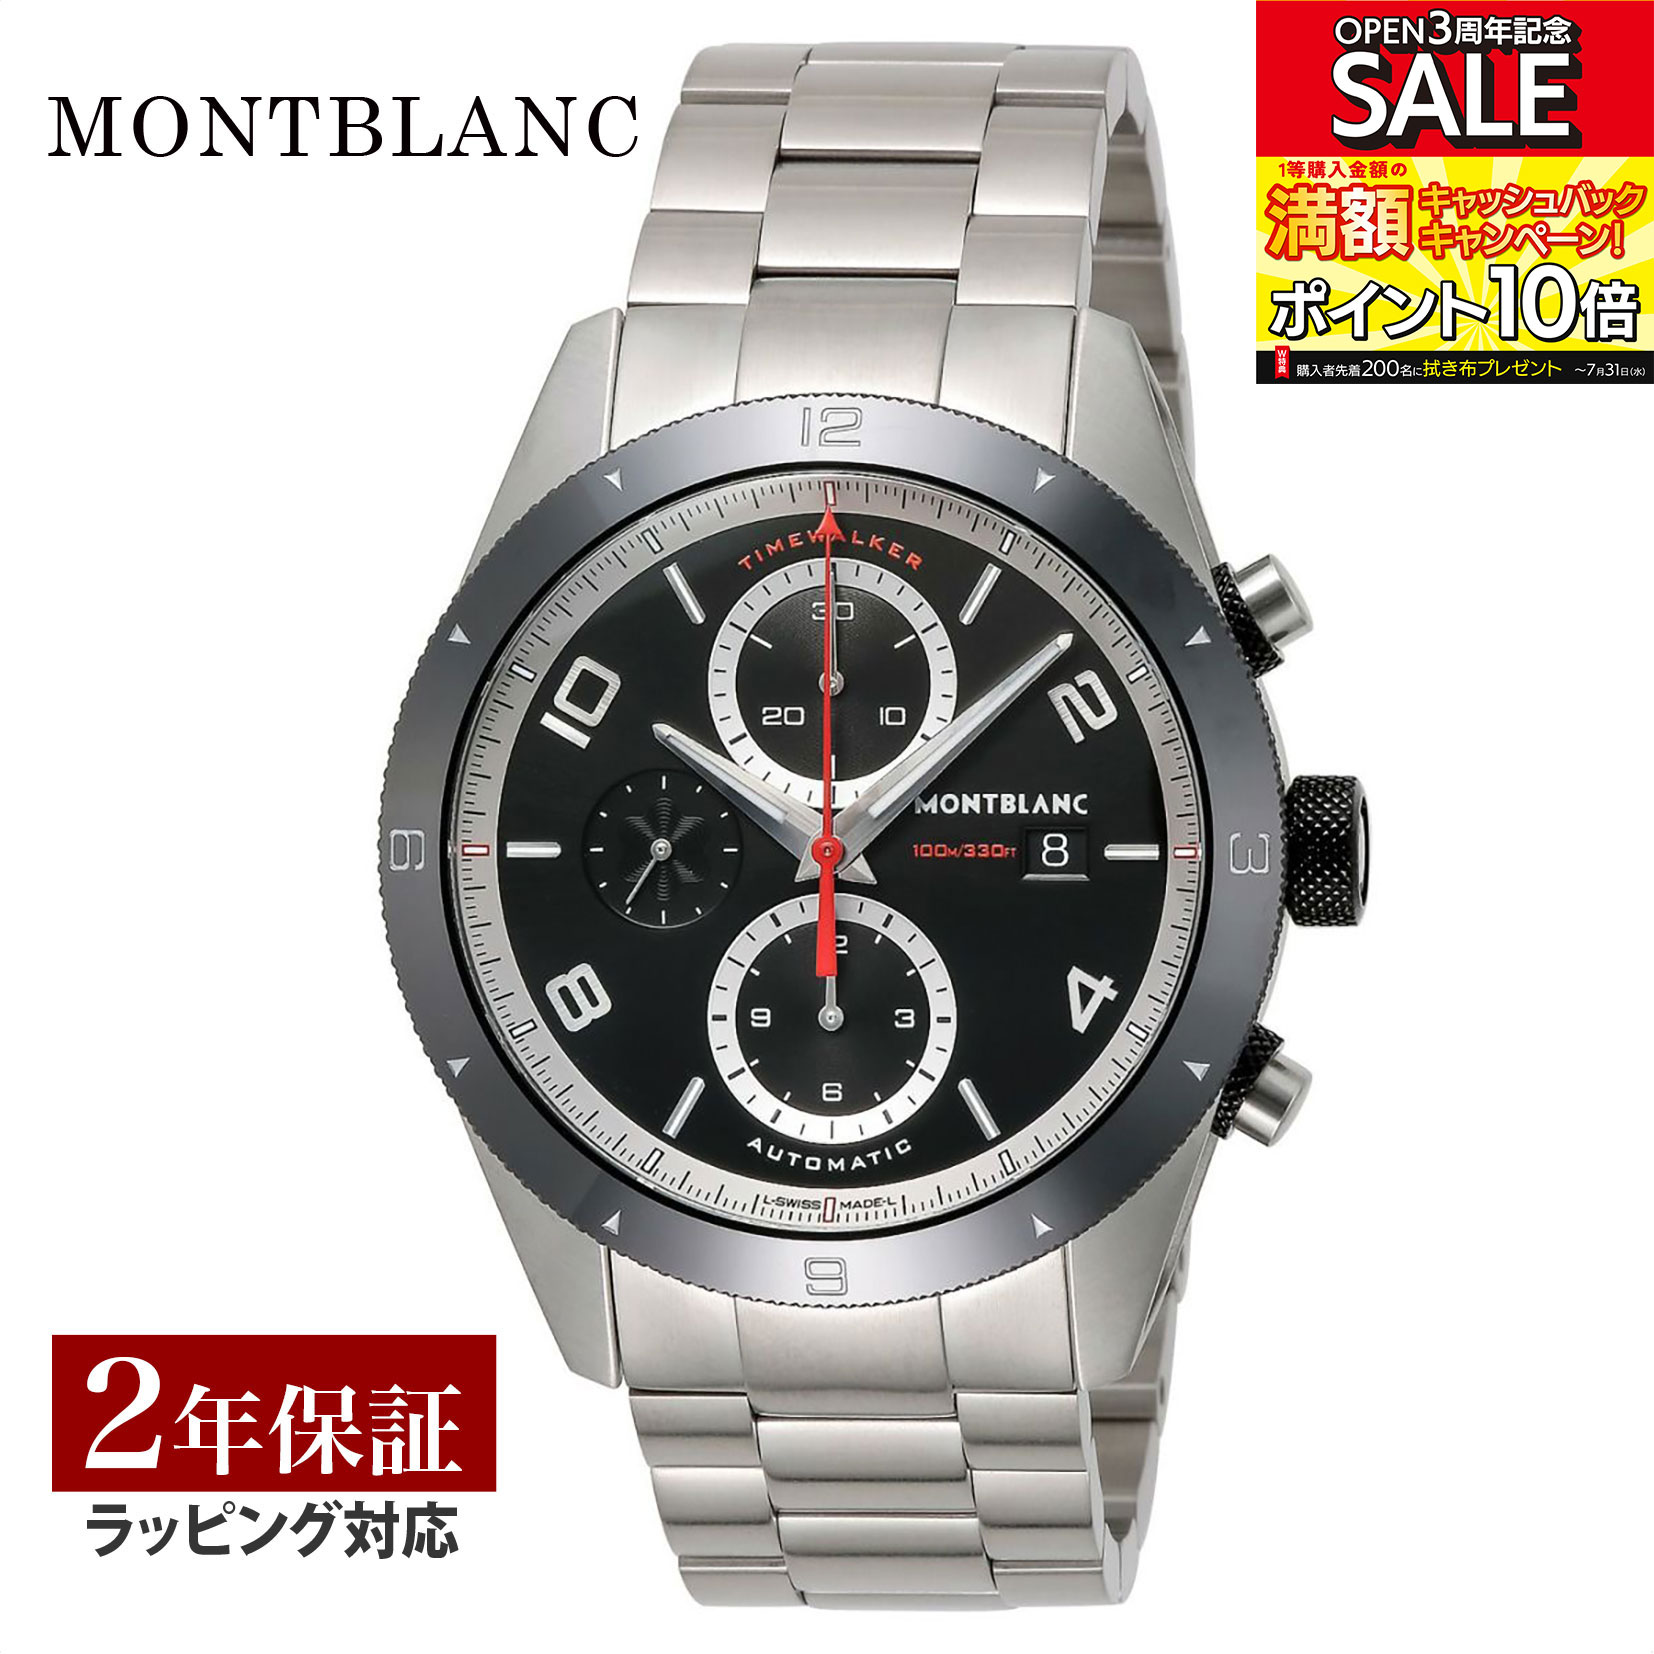 モンブラン Montblanc メンズ 時計 TIME WALKER タイムウォーカー 自動巻 ブラック 116097 時計 腕時計 高級腕時計 ブランド 【ローン金利無料】